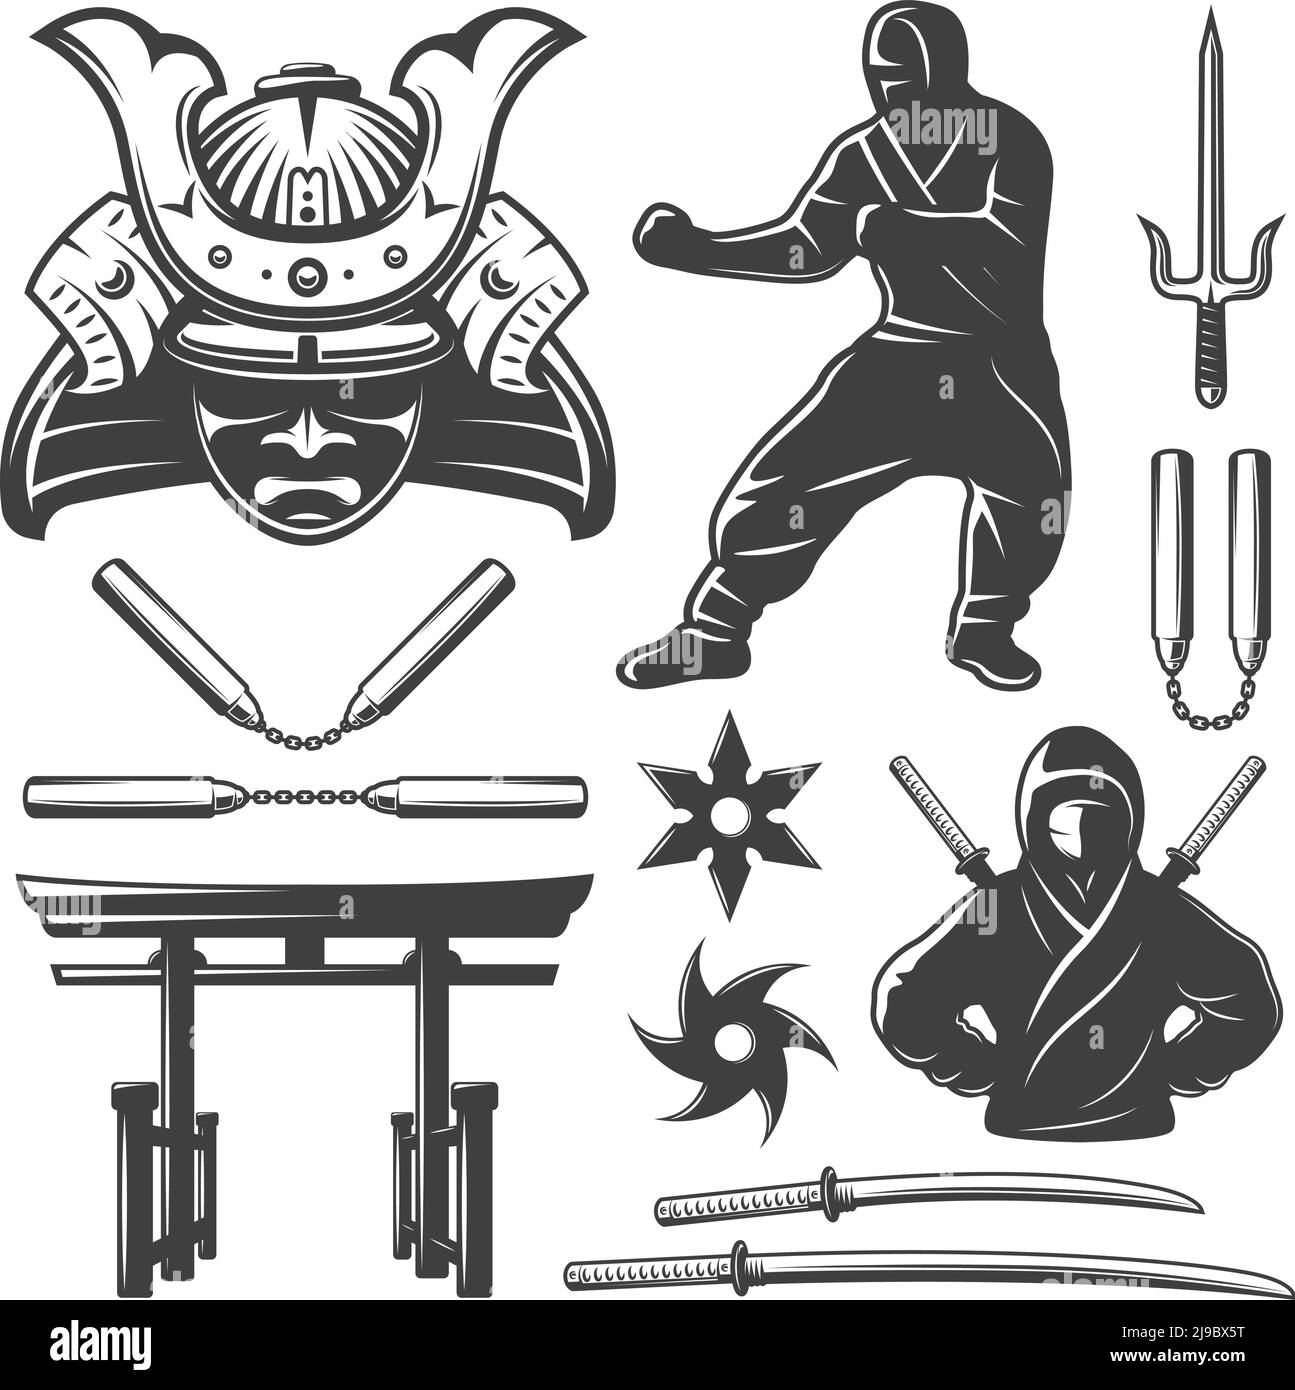 Ensemble monochrome isolé avec symboles samouraïs et armes, y compris les nunchucks épées et shurikens sur une illustration vectorielle d'arrière-plan vierge Illustration de Vecteur